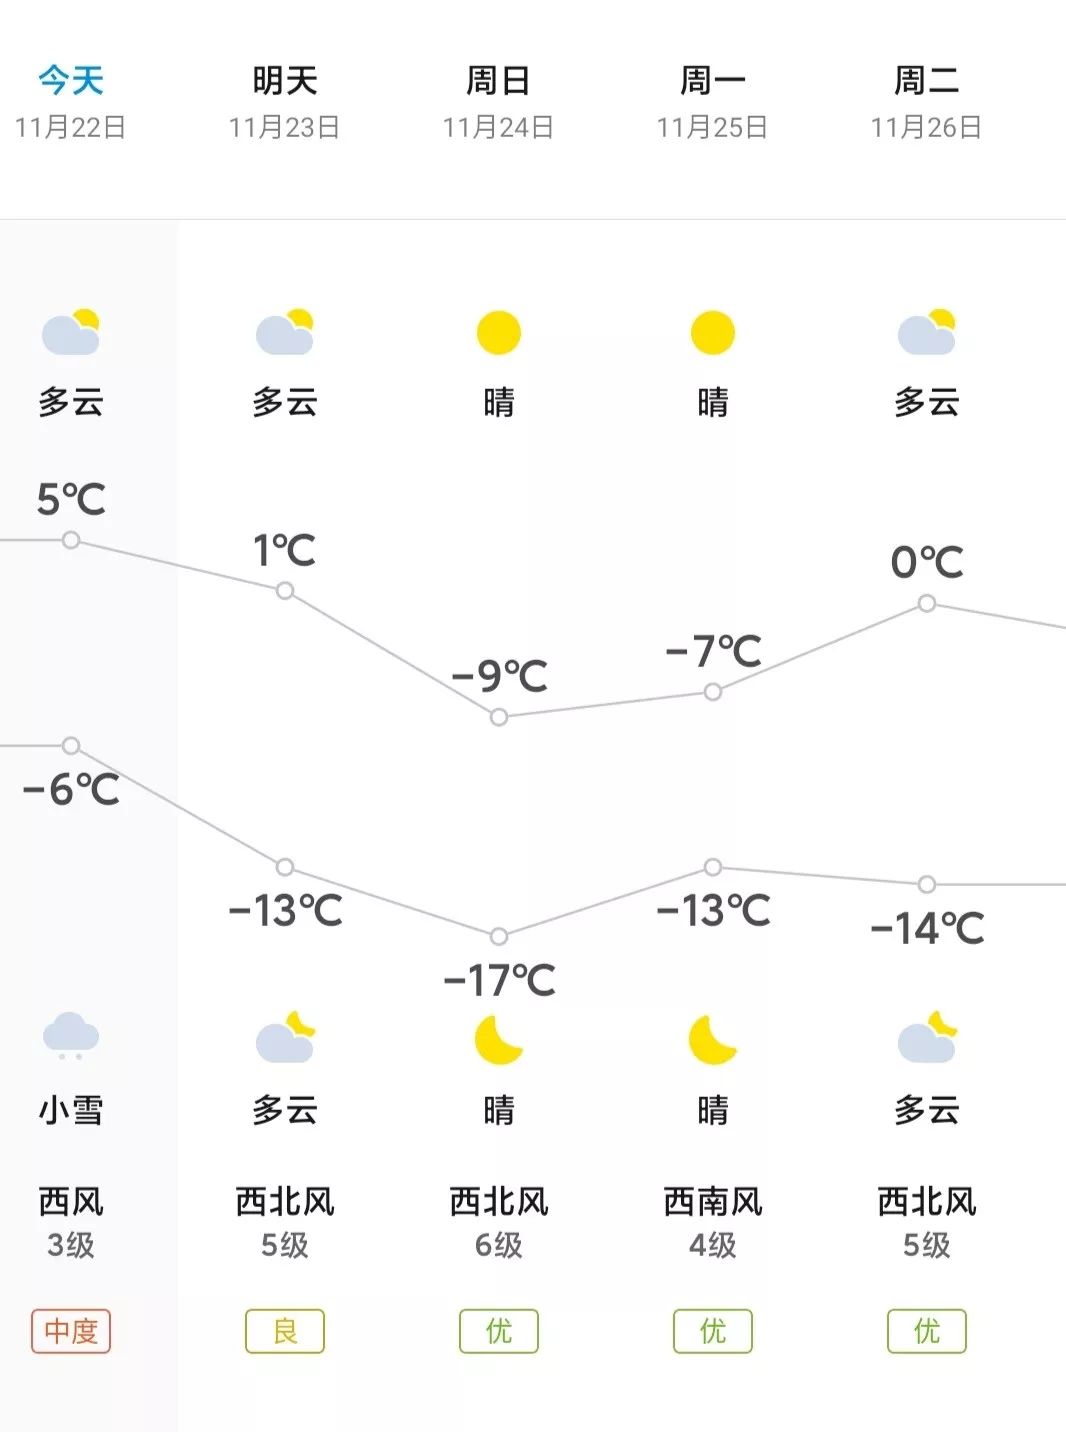 张北县具体天气预报